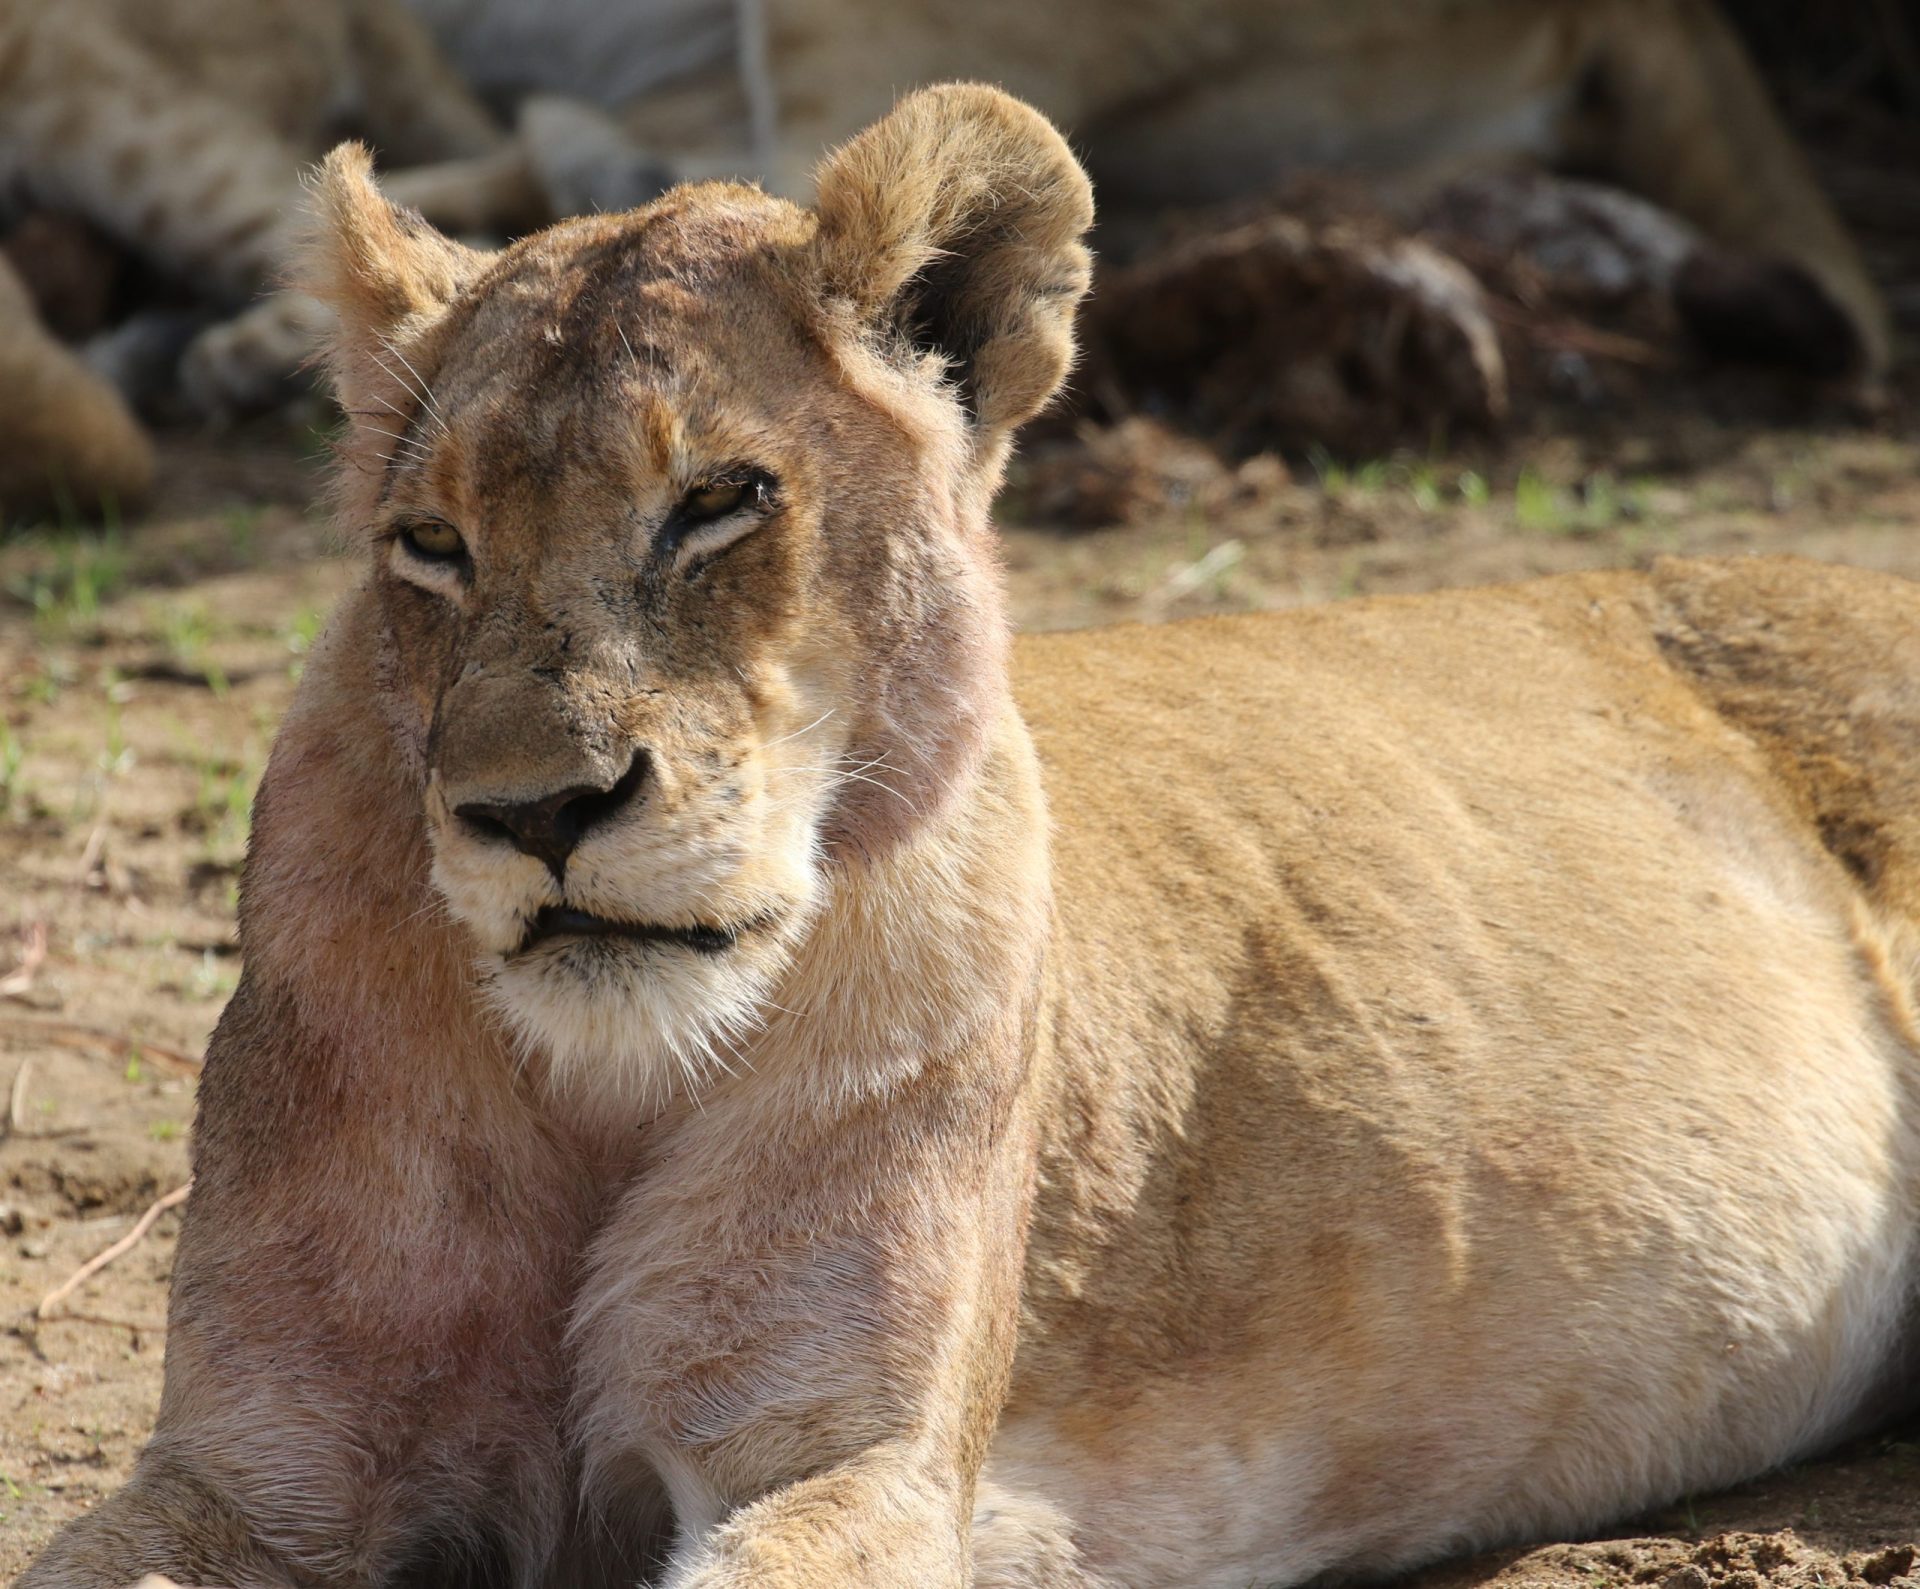 Jardim Zoológico amputa garras de leoa para que visitantes possam brincar com animal | VÍDEO